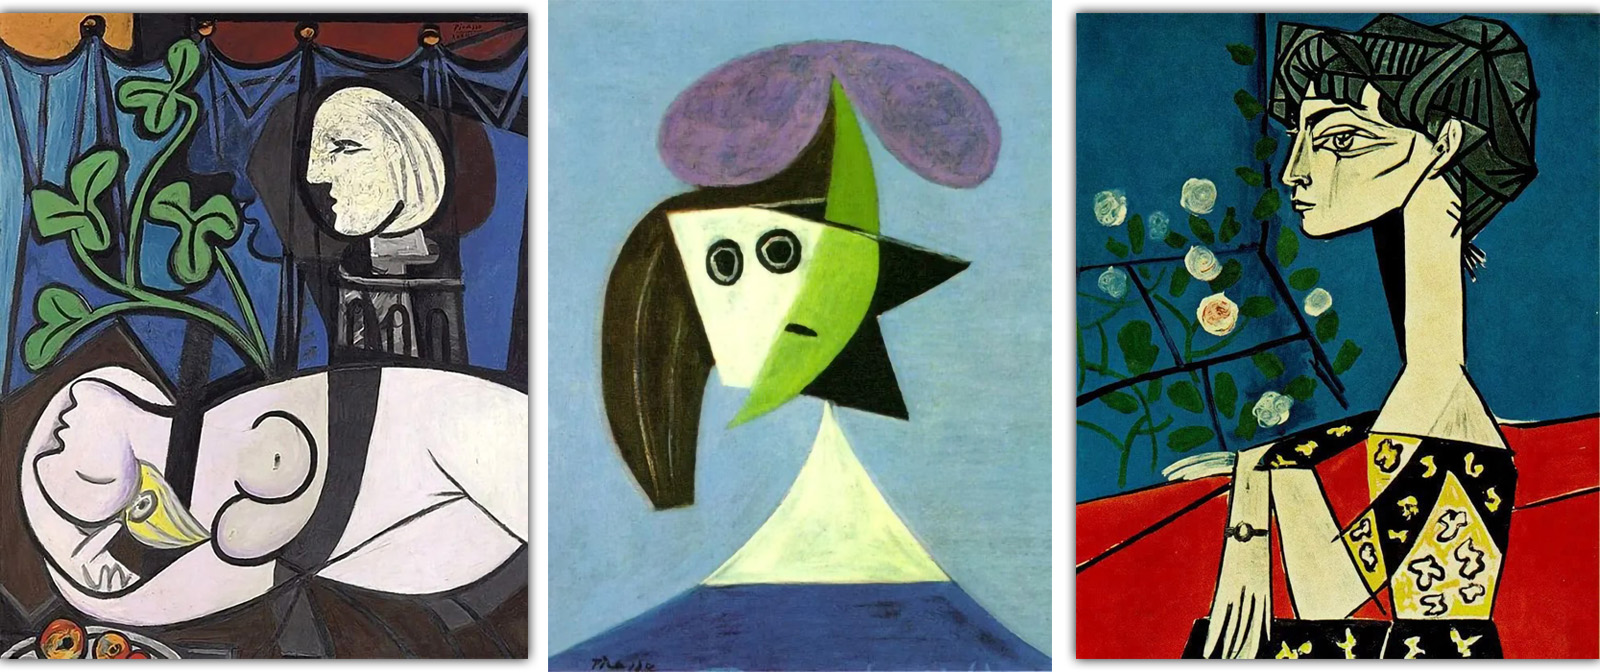 Завёл мартышку и выгнал возлюбленную из дома, постоянно менял стили и брал наработки других художников. Противоречивый Пабло Пикассо.